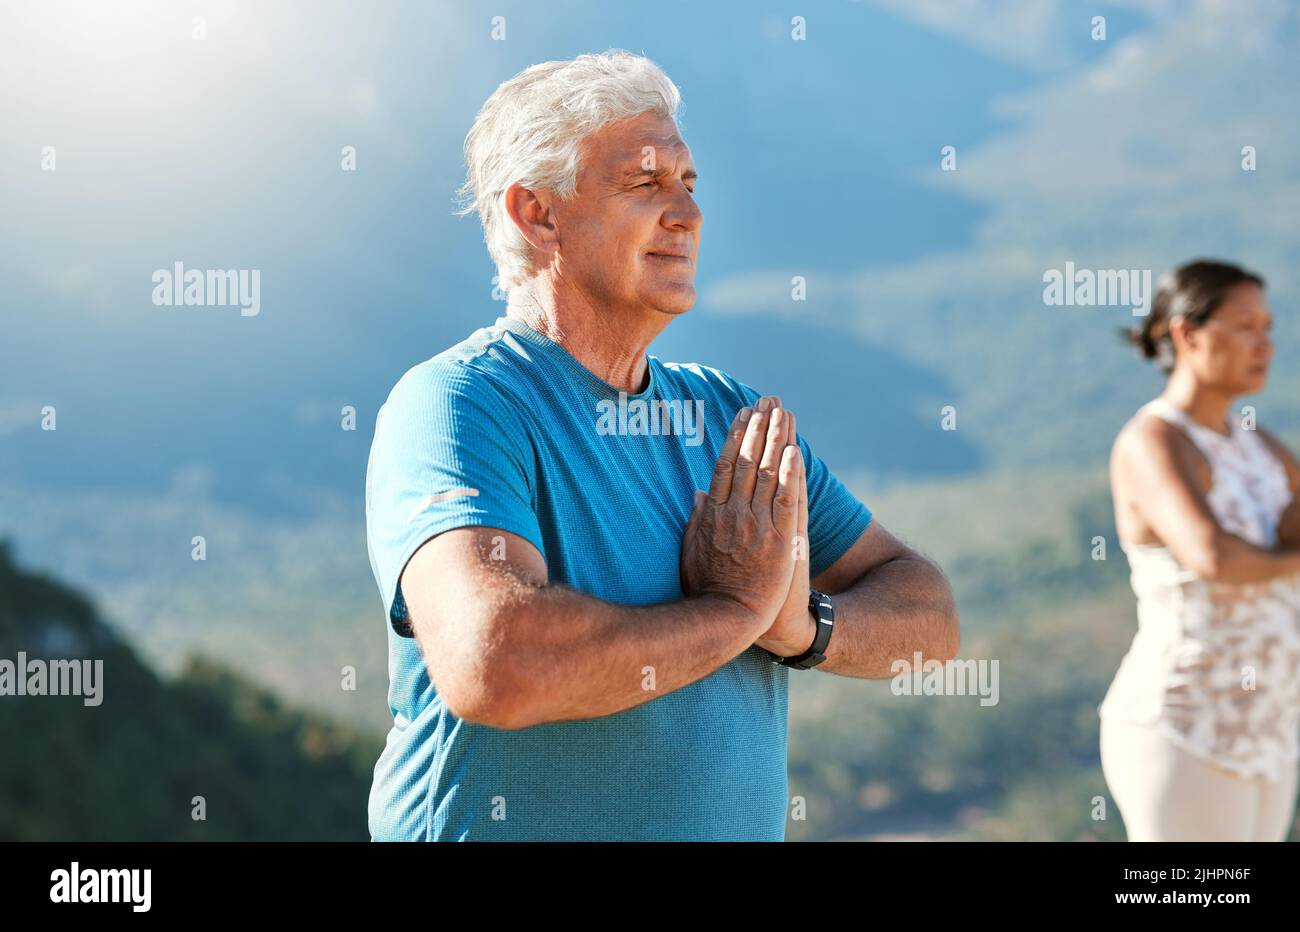 Älterer Mann meditiert mit verbundenen Händen und geschlossenen Augen und atmet tief. Reife Menschen, die Yoga in der Natur machen und einen gesunden aktiven Lebensstil leben Stockfoto